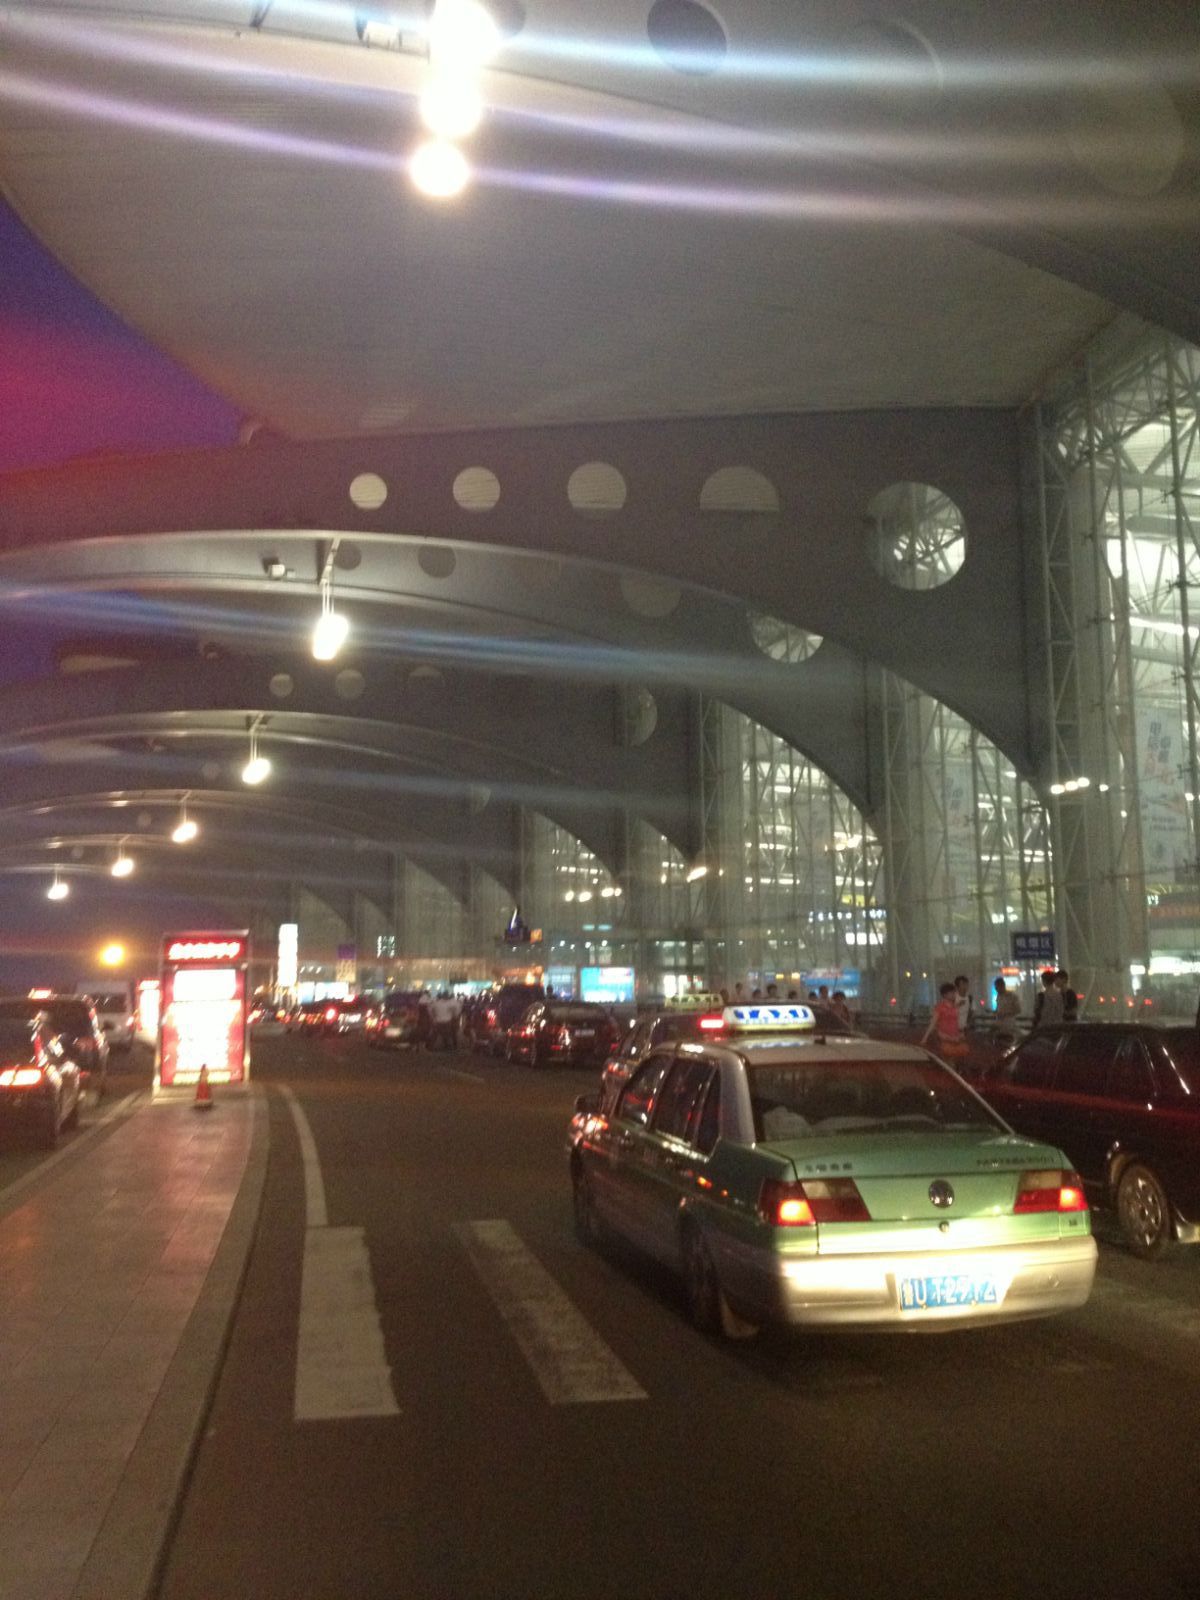 青岛胶东国际机场正式转场运营！再见流亭！这段空地对话令人泪目 - 民用航空网